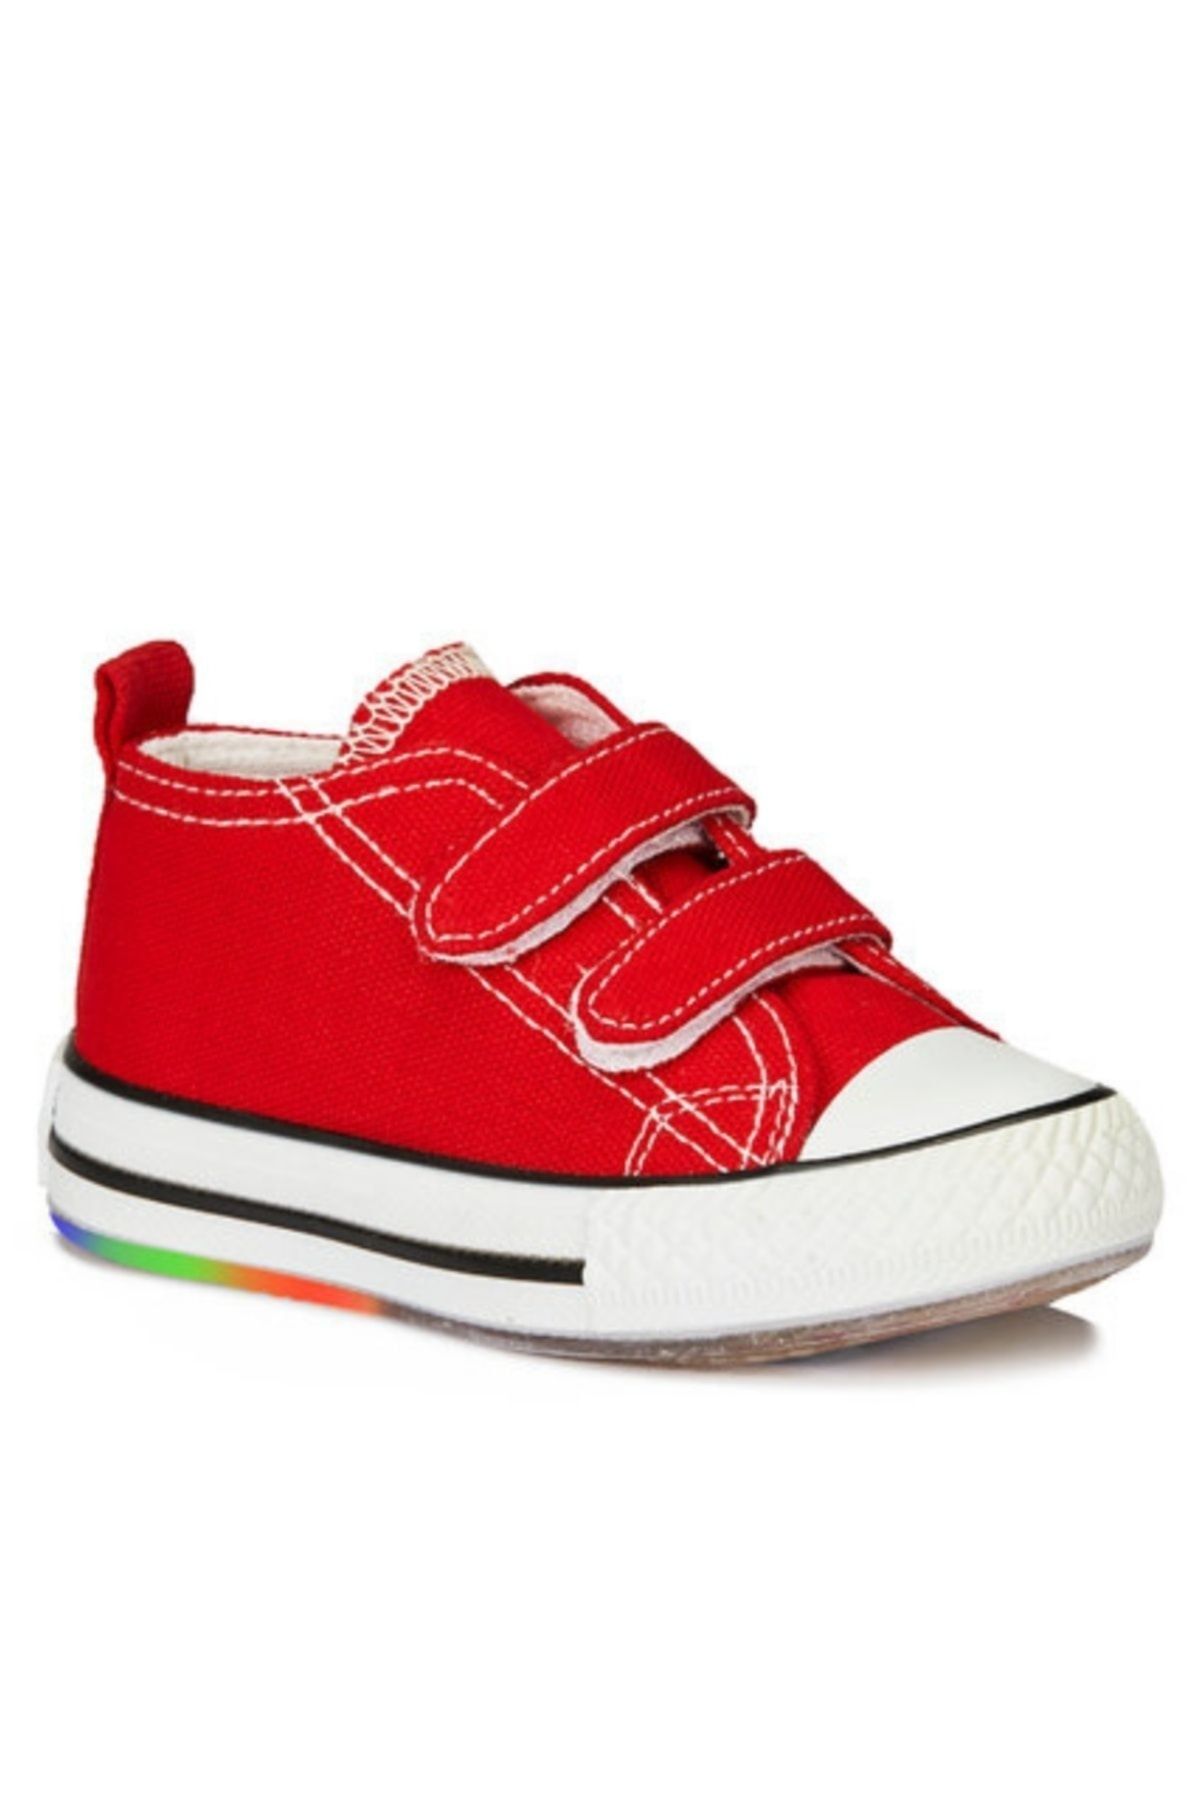 Vicco Pino Kız / Erkek Çocuk Işıklı Kırmızı Sneaker Bebe Patik Spor Ayakkabı